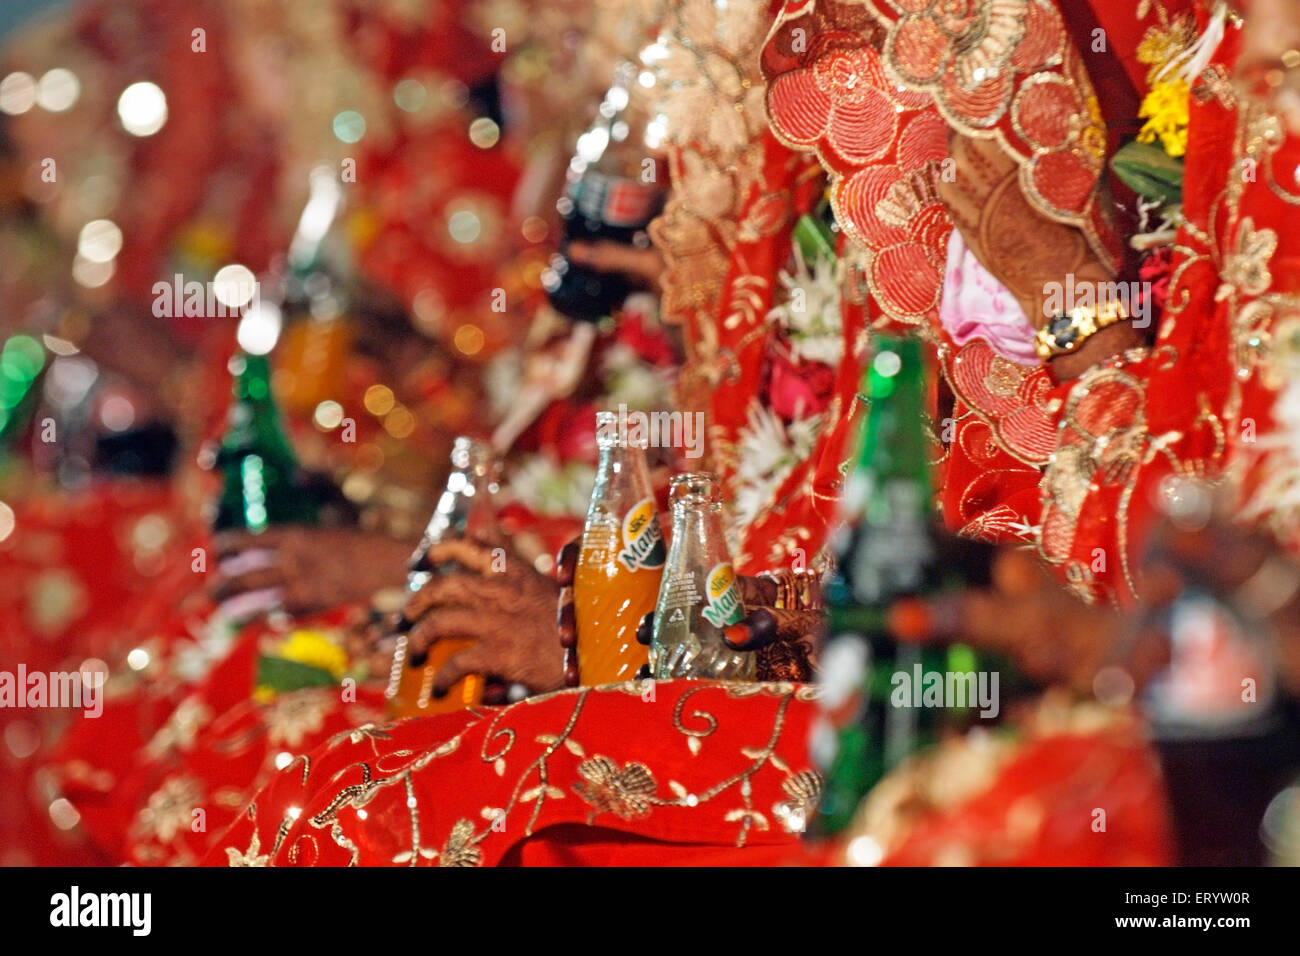 Boisson de la mariée indienne Dukes Mangola boisson aromatisée à la mangue commercialisée par PepsiCo en Inde , Bombay , Mumbai , Maharashtra , Inde , Asie Banque D'Images